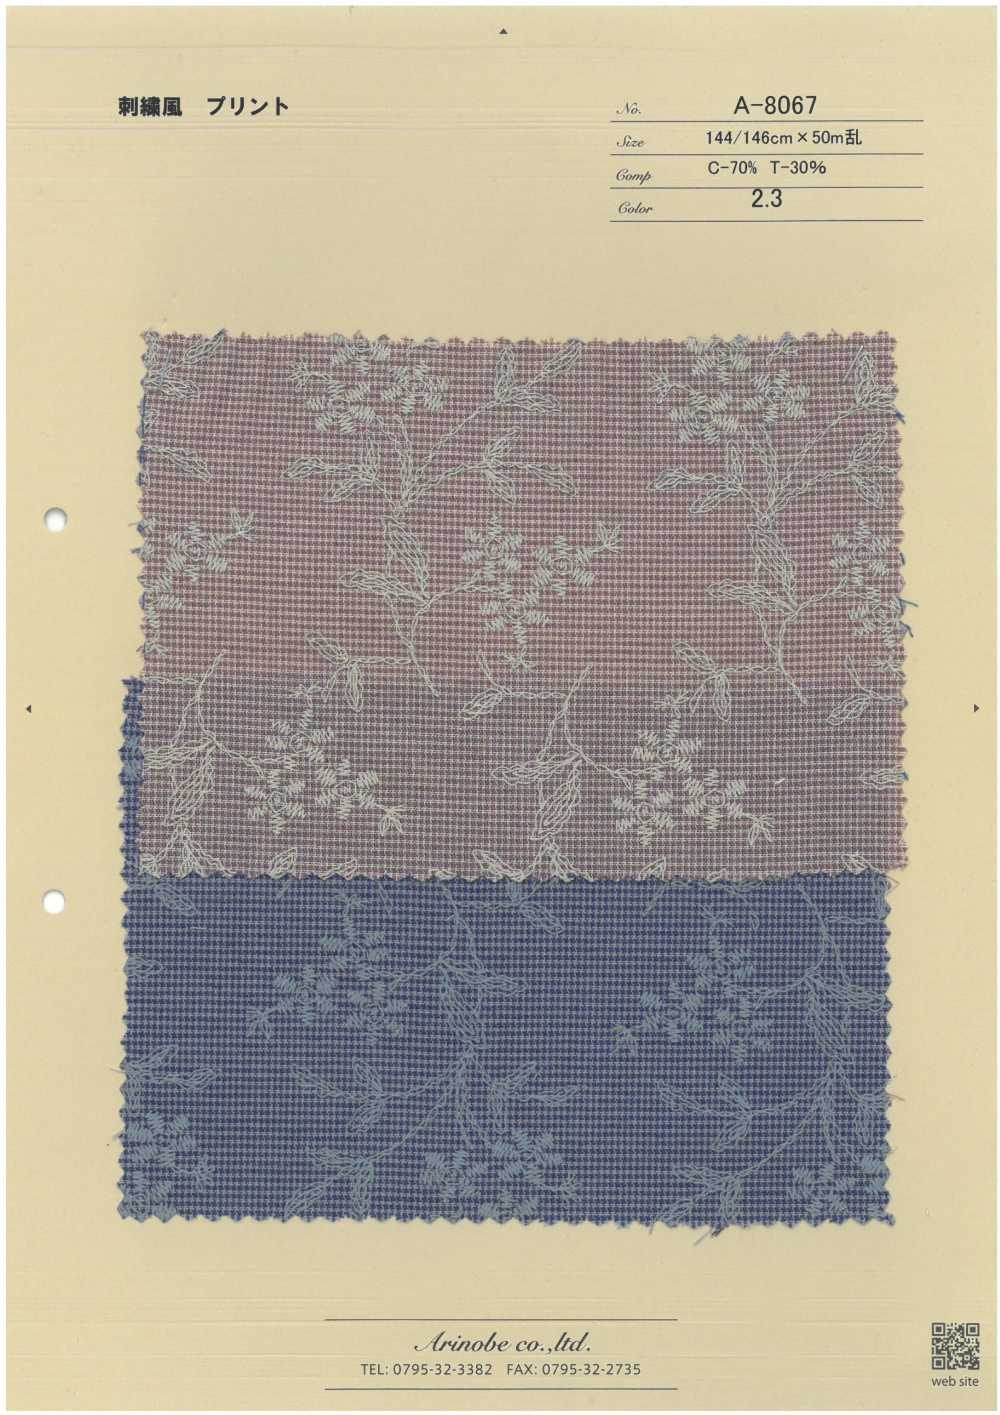 A-8067 Impresión Del Estilo Del Bordado[Fabrica Textil] ARINOBE CO., LTD.